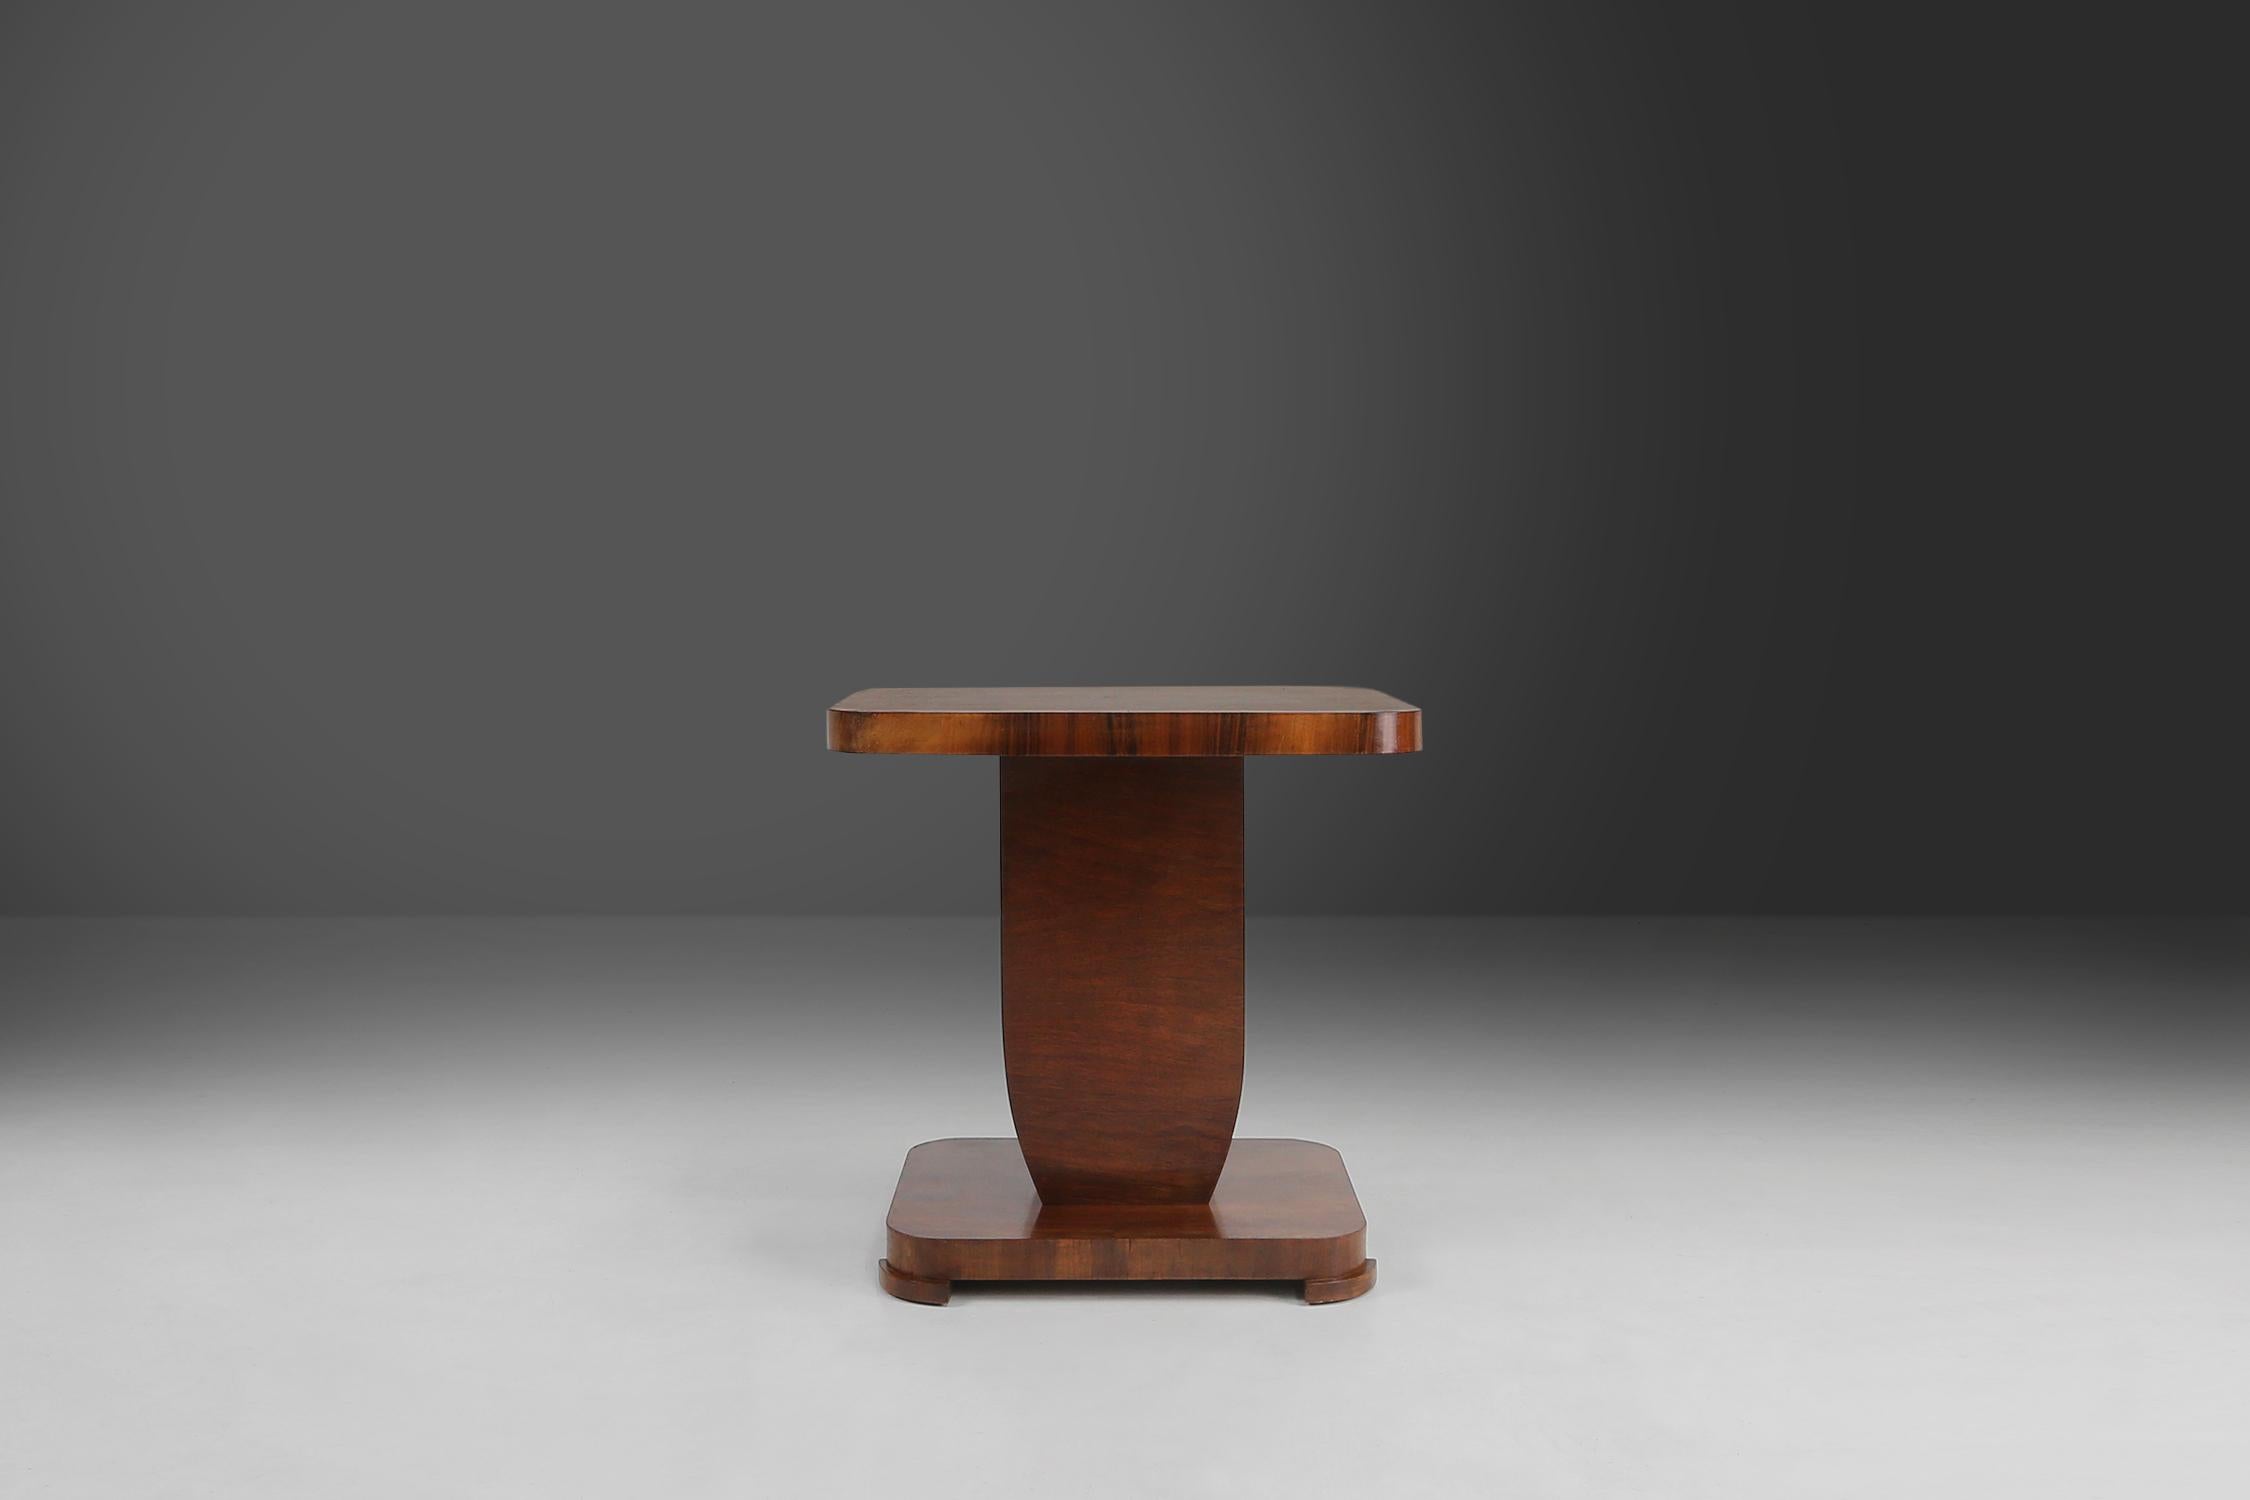 Découvrez le charme du passé avec cette table d'appoint Art déco originale des années 1930.

Avec son plateau en placage de noyer, ce meuble allie savoir-faire et élégance.

Ses formes géométriques et ses lignes reflètent le style emblématique de